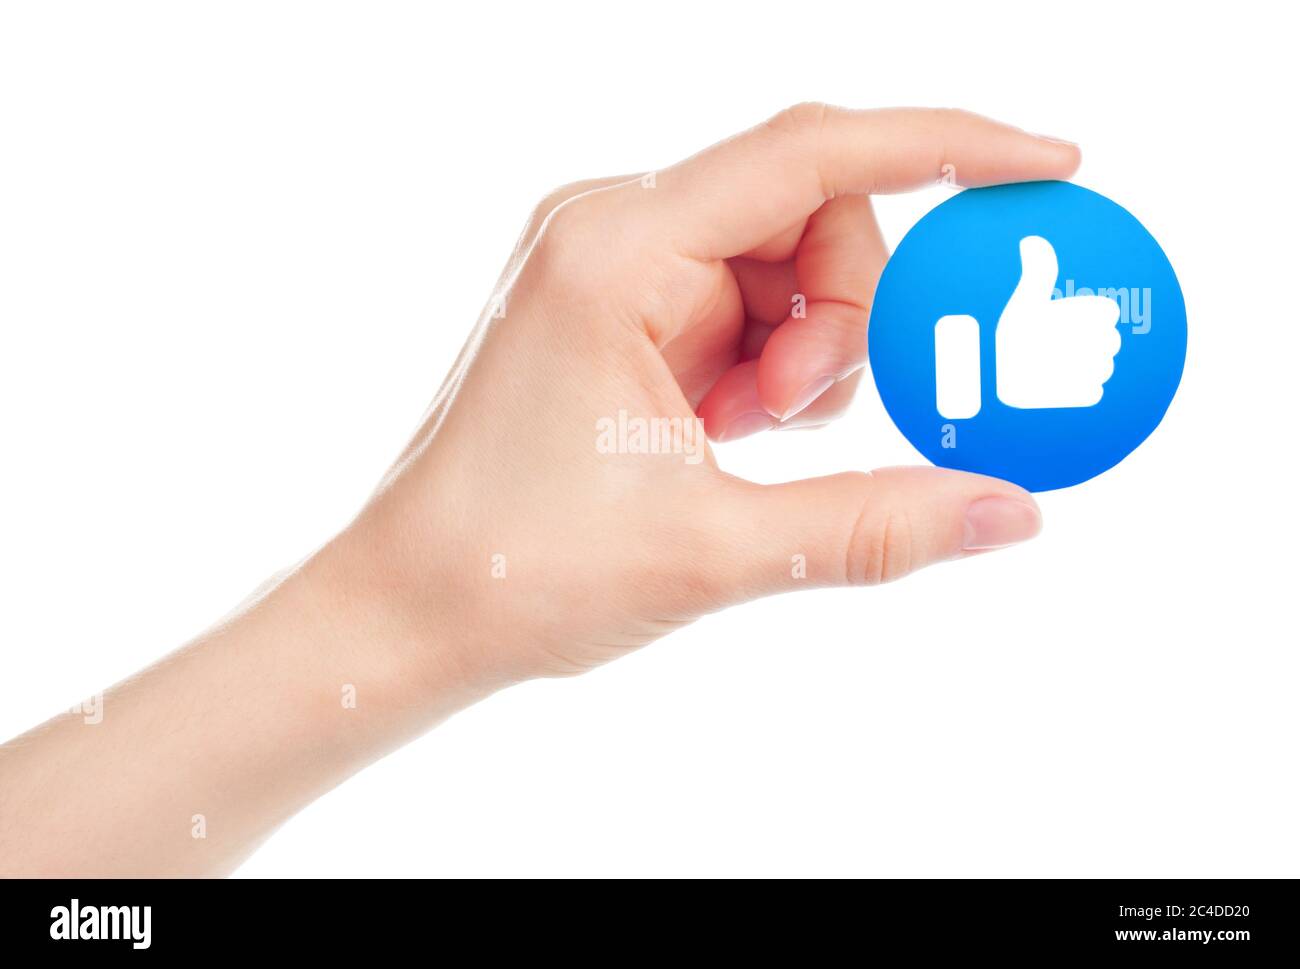 Kiew, Ukraine - 15. Mai 2019: Hand hält Neues Facebook-Like-Icon auf Papier gedruckt. Facebook ist ein bekannter Dienst für soziale Netzwerke Stockfoto